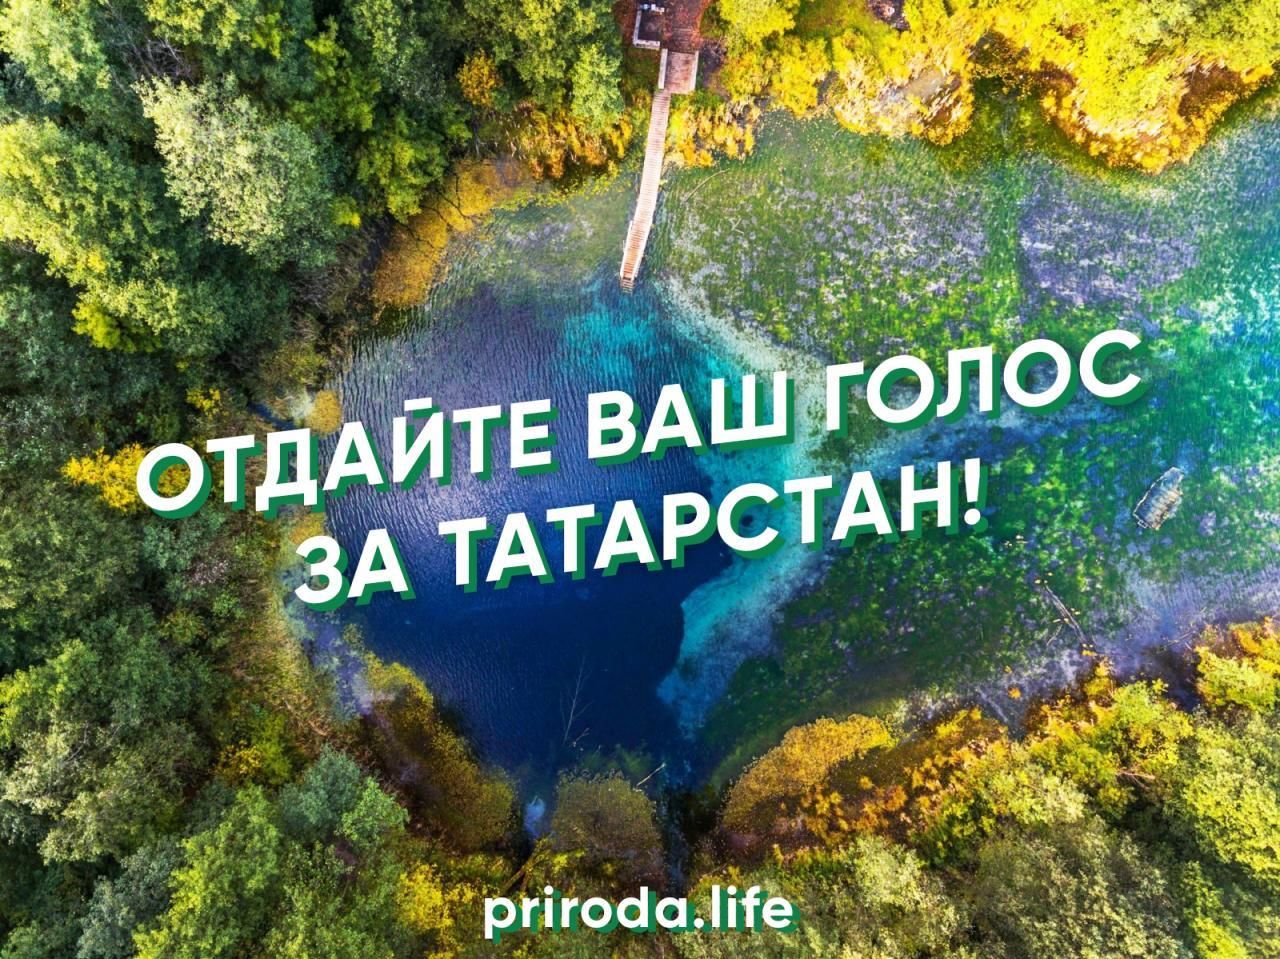 Республика Татарстан лидирует в конкурсе туристско-рекреационных зон России